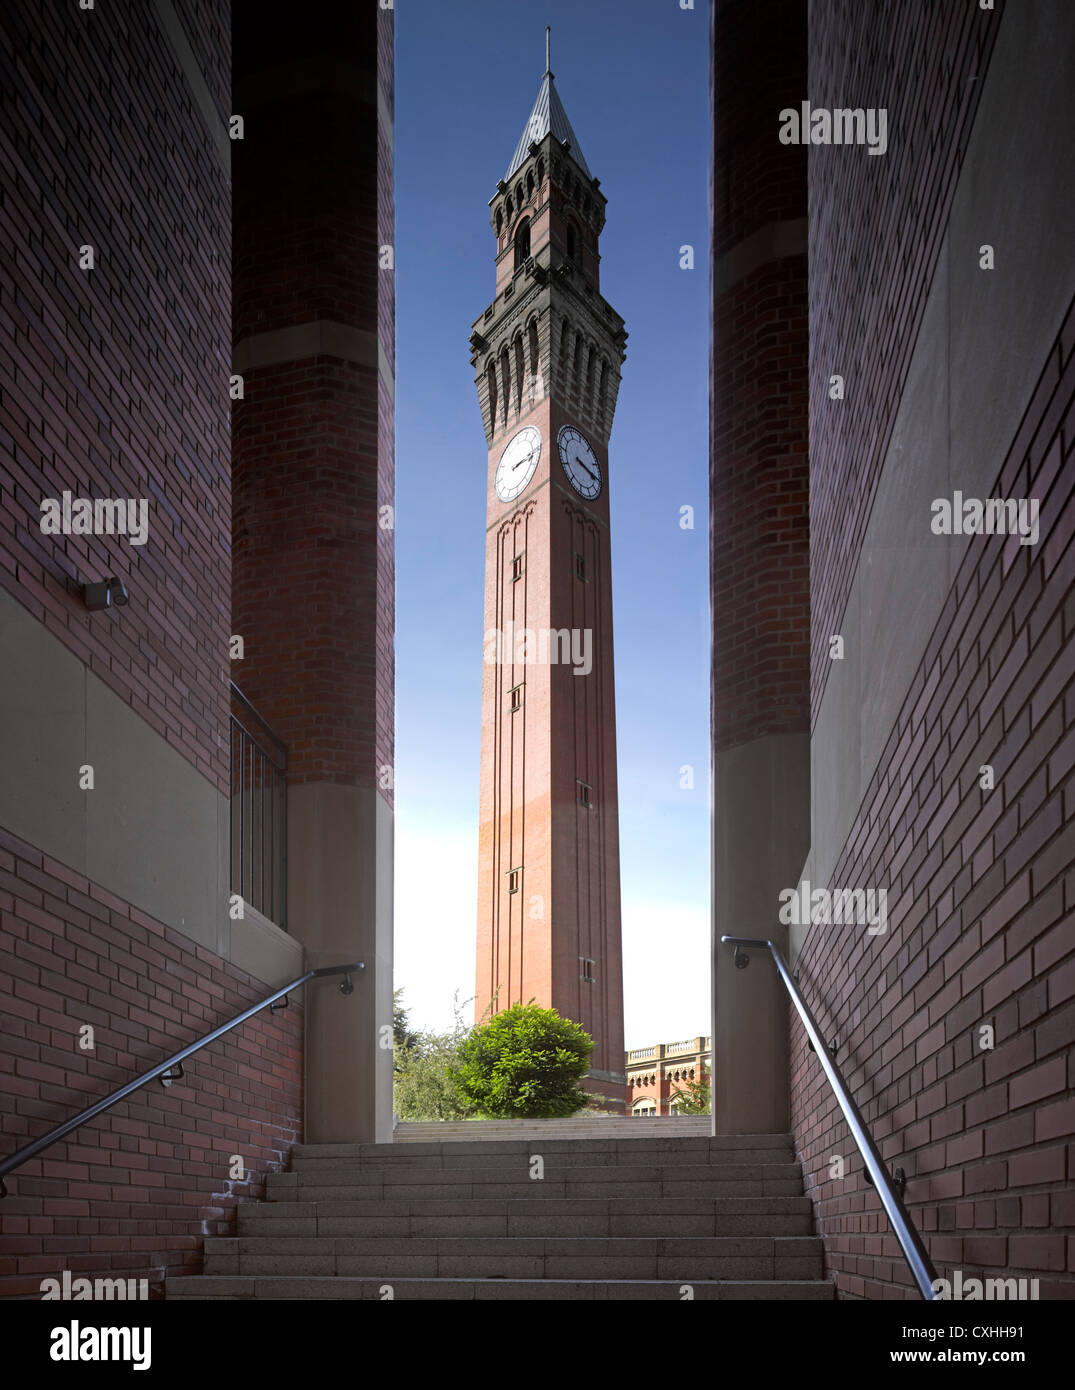 Bramall Musik-Gebäude, Universität von Birmingham, Birmingham, Vereinigtes Königreich. Architekt: Glenn Howells Architects, 2012. Blick auf Stockfoto